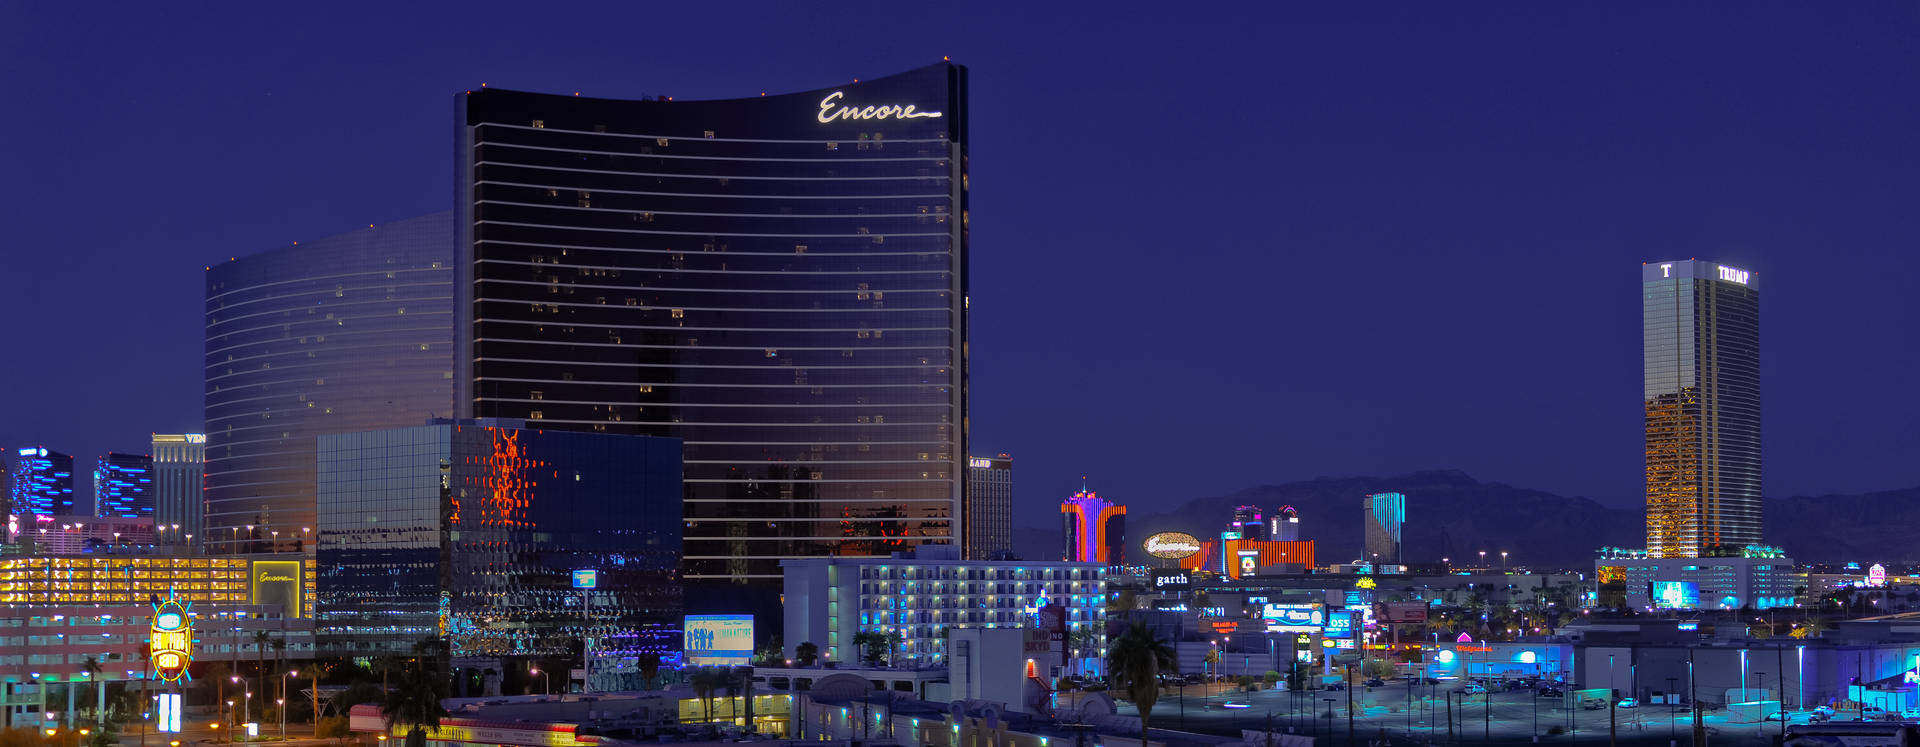 Las Vegas Encore In Widescreen Wallpaper